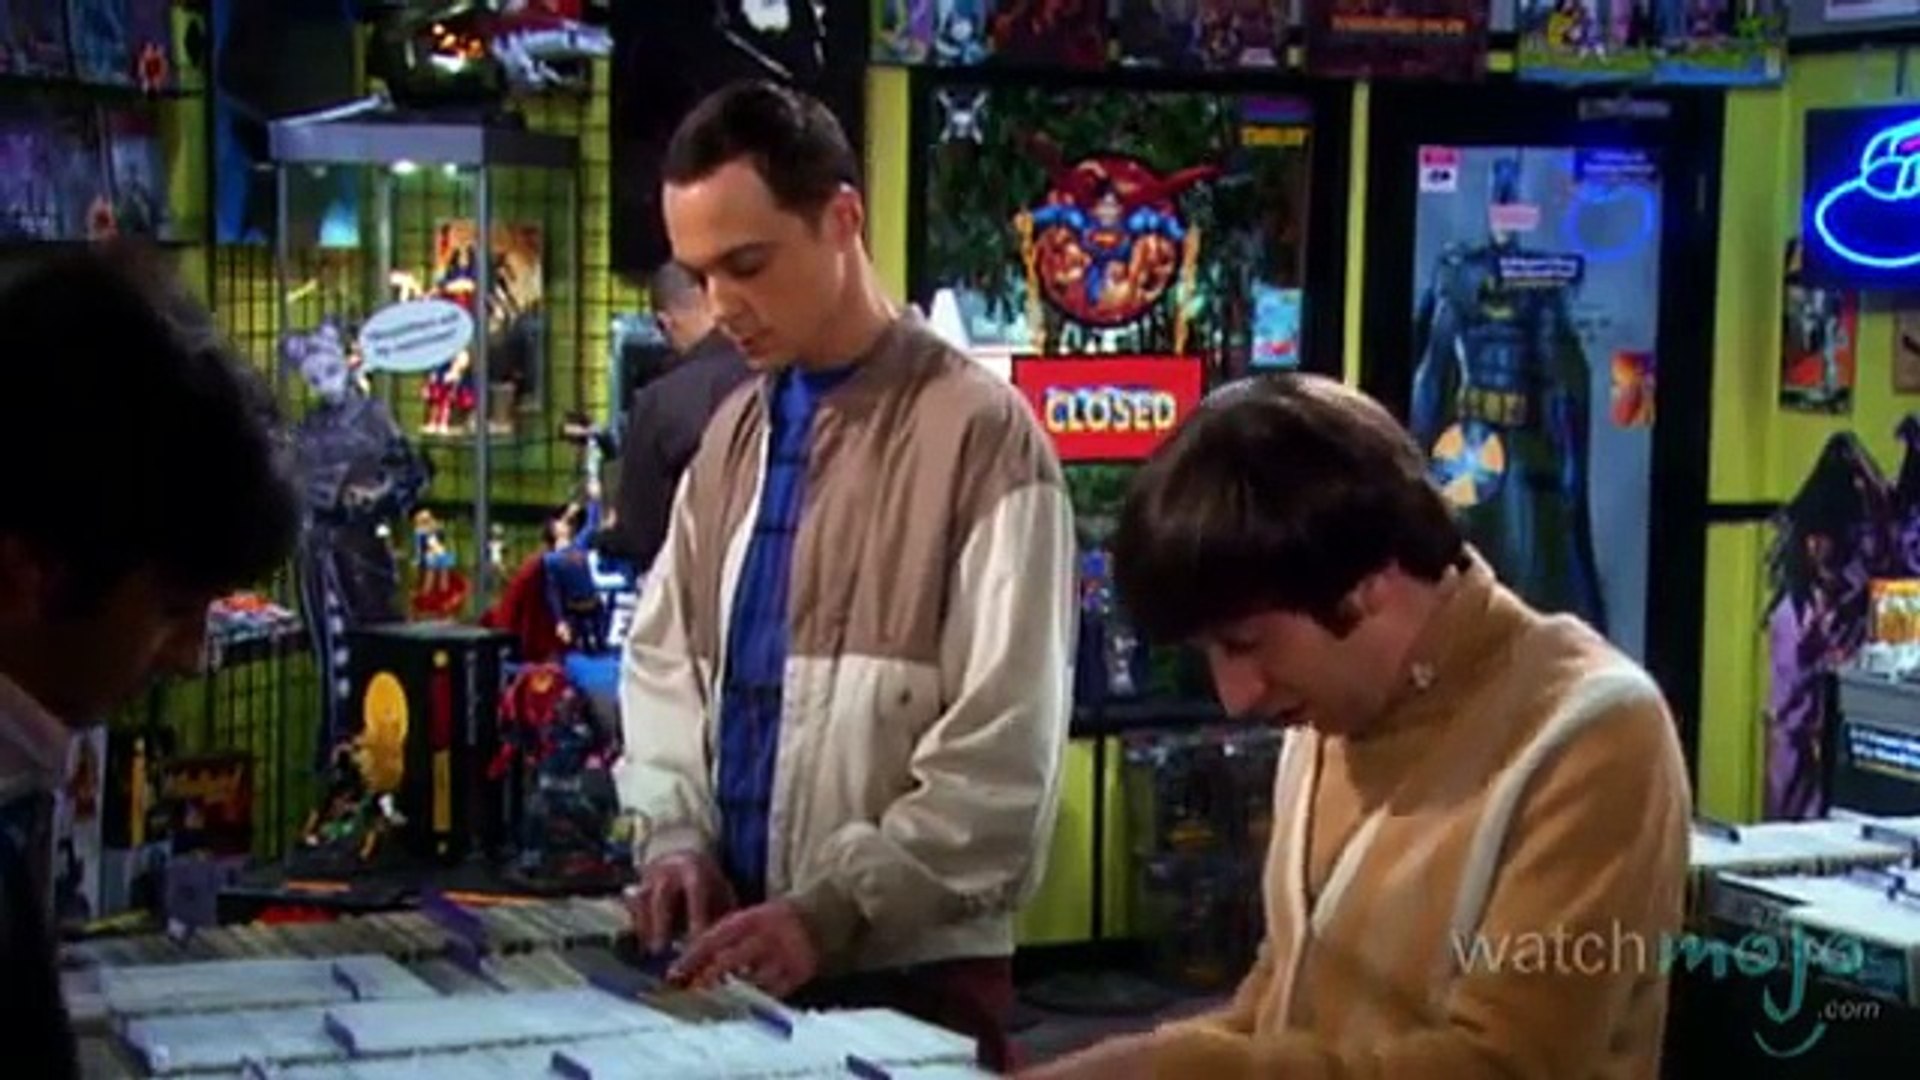 Top 10 The Big Bang Theory Running Gags